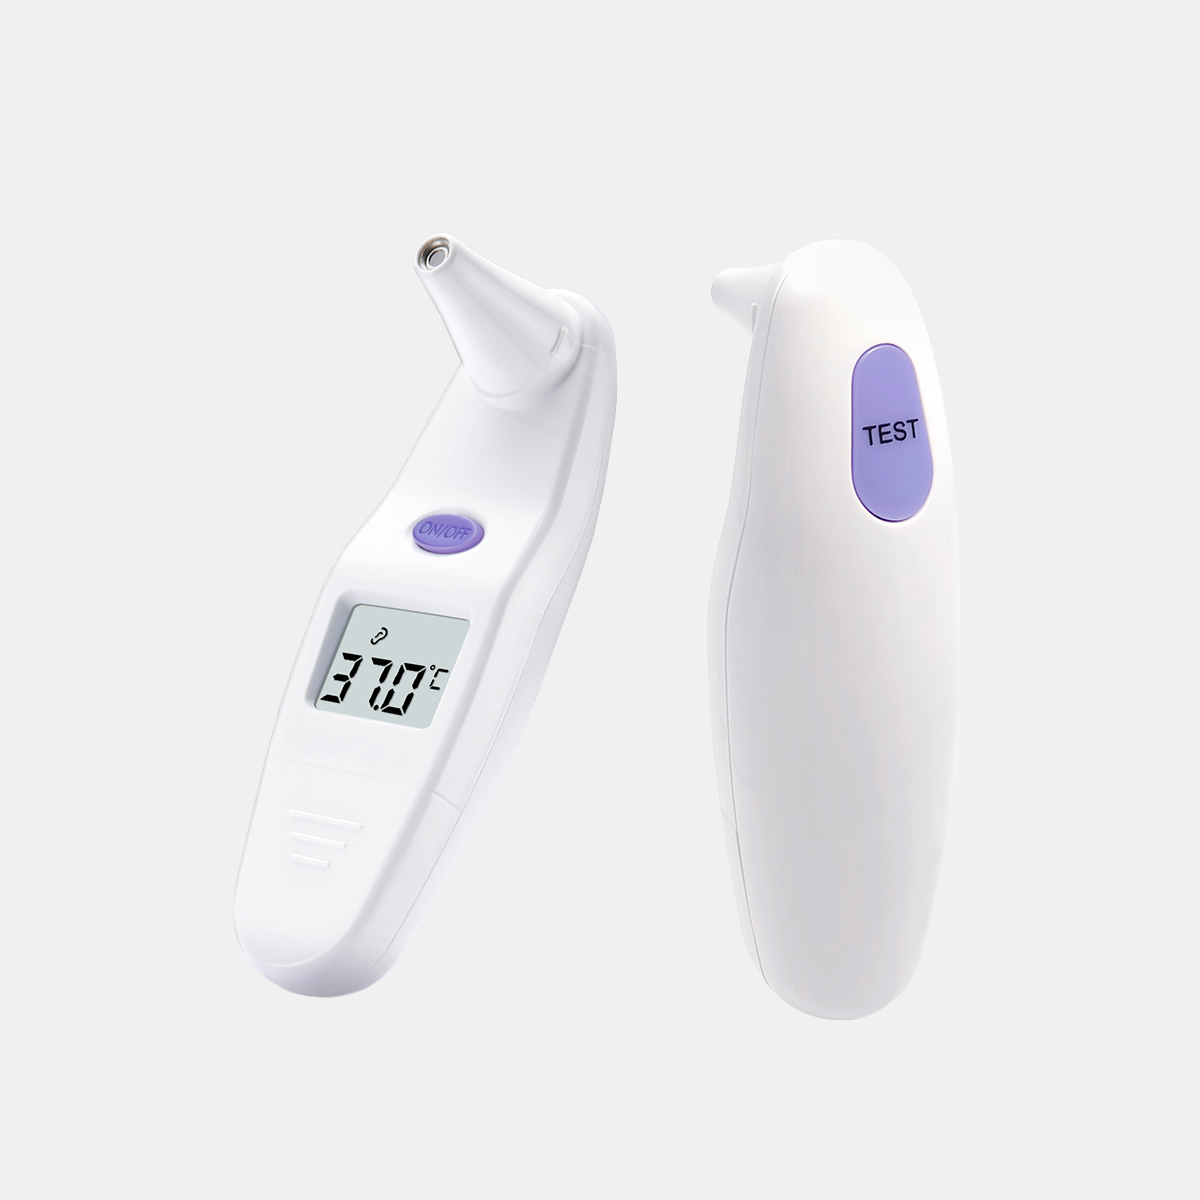 Mali bazalni infracrveni ušni termometar Sejoy za ljudsku temperaturu CE MDR odobrenje